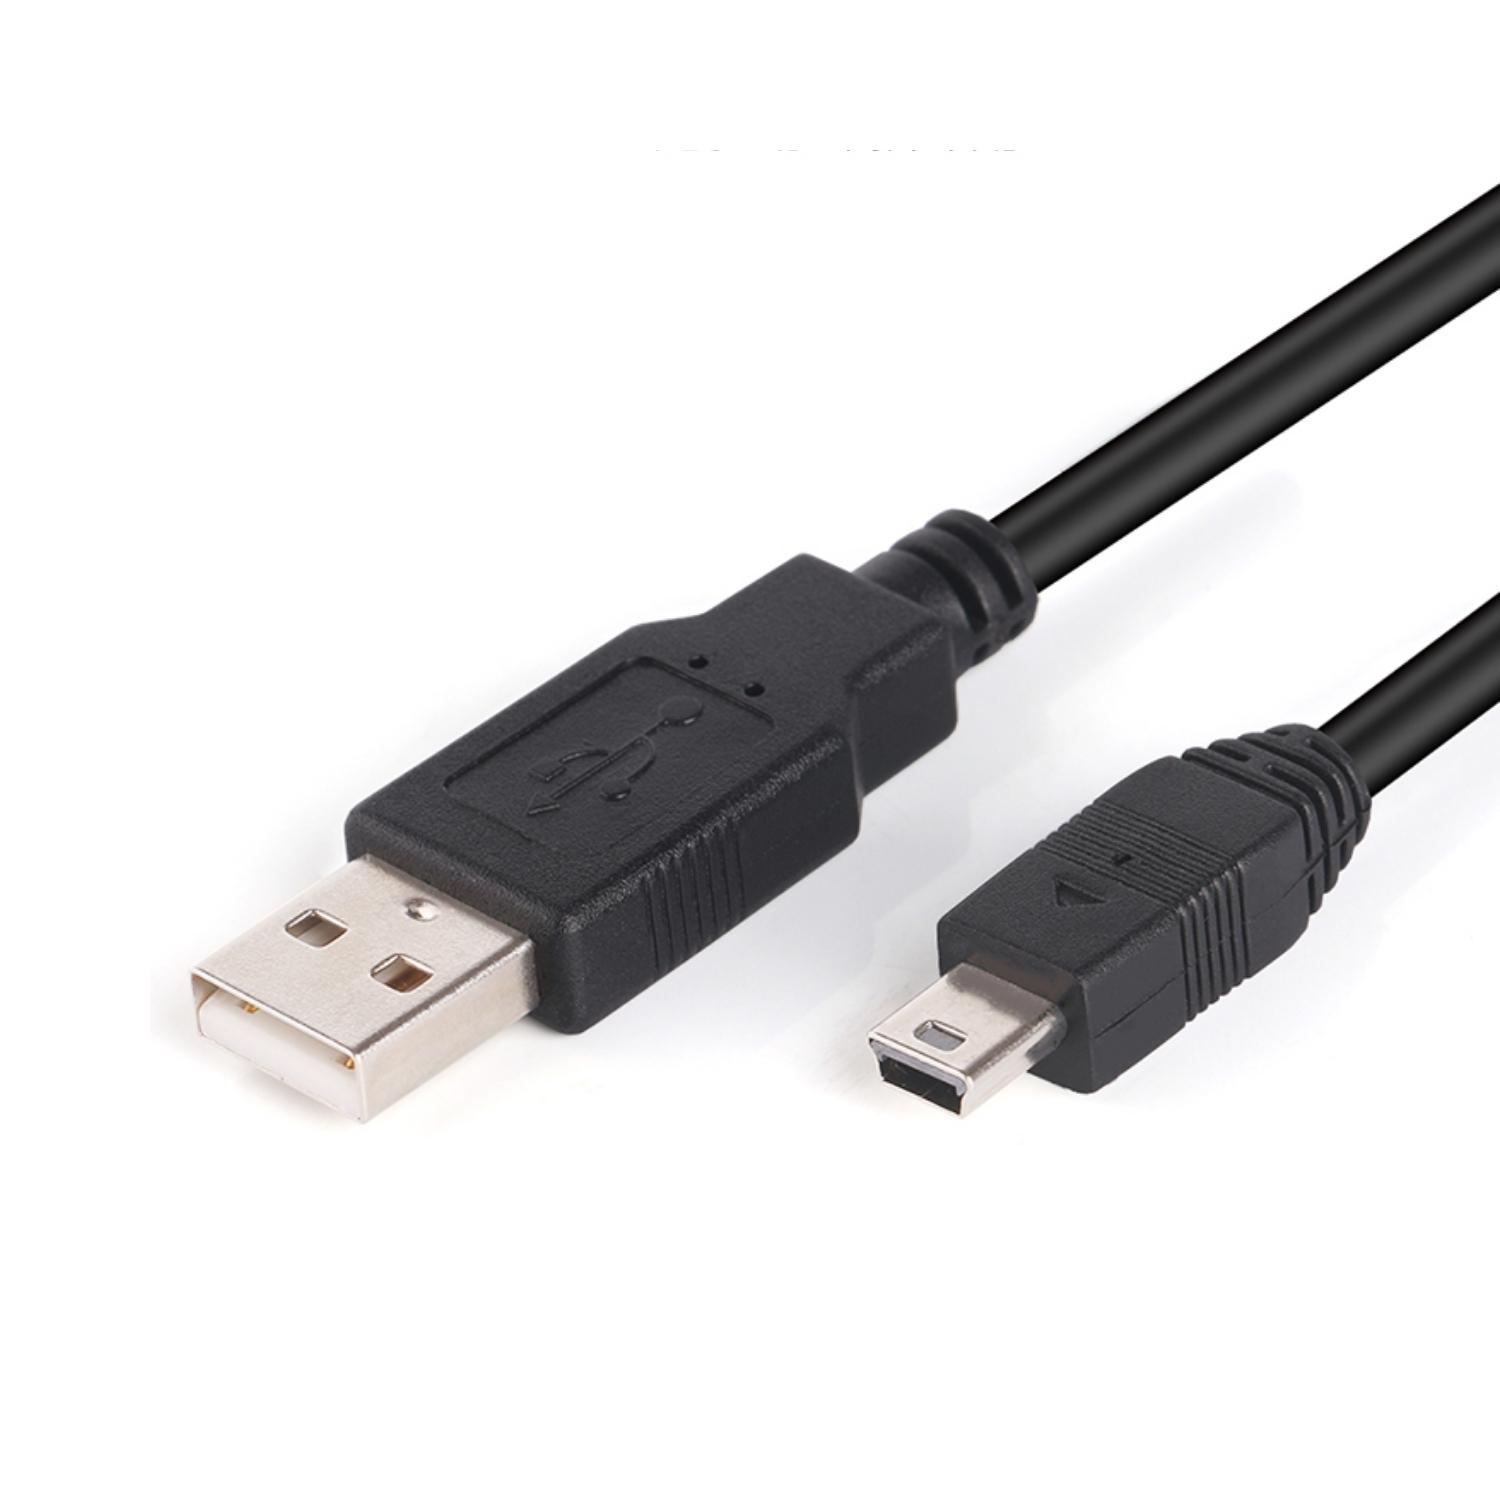 [3玉山網] USB 轉 Mini USB 充電線 1m 適 Texas TI-Nspire CX CAS / TI-84 PLUS CE 計算機 計算器專用 480Mbps 數據傳輸線_PP3